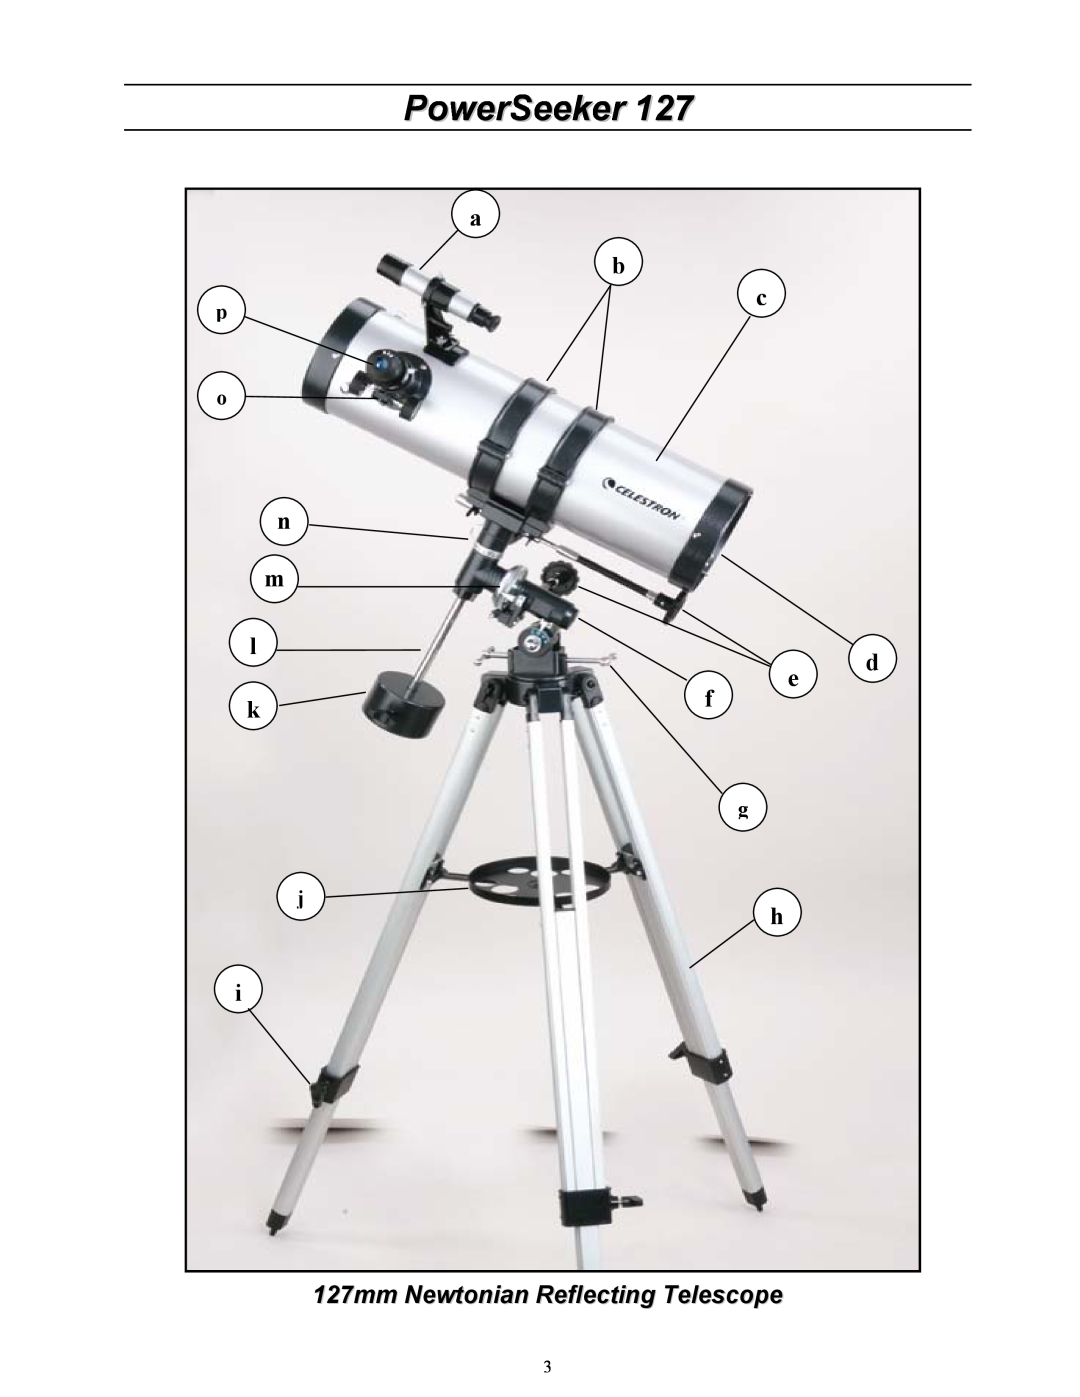 Celestron manual 127mm Newtonian Reflecting Telescope, PowerSeeker 